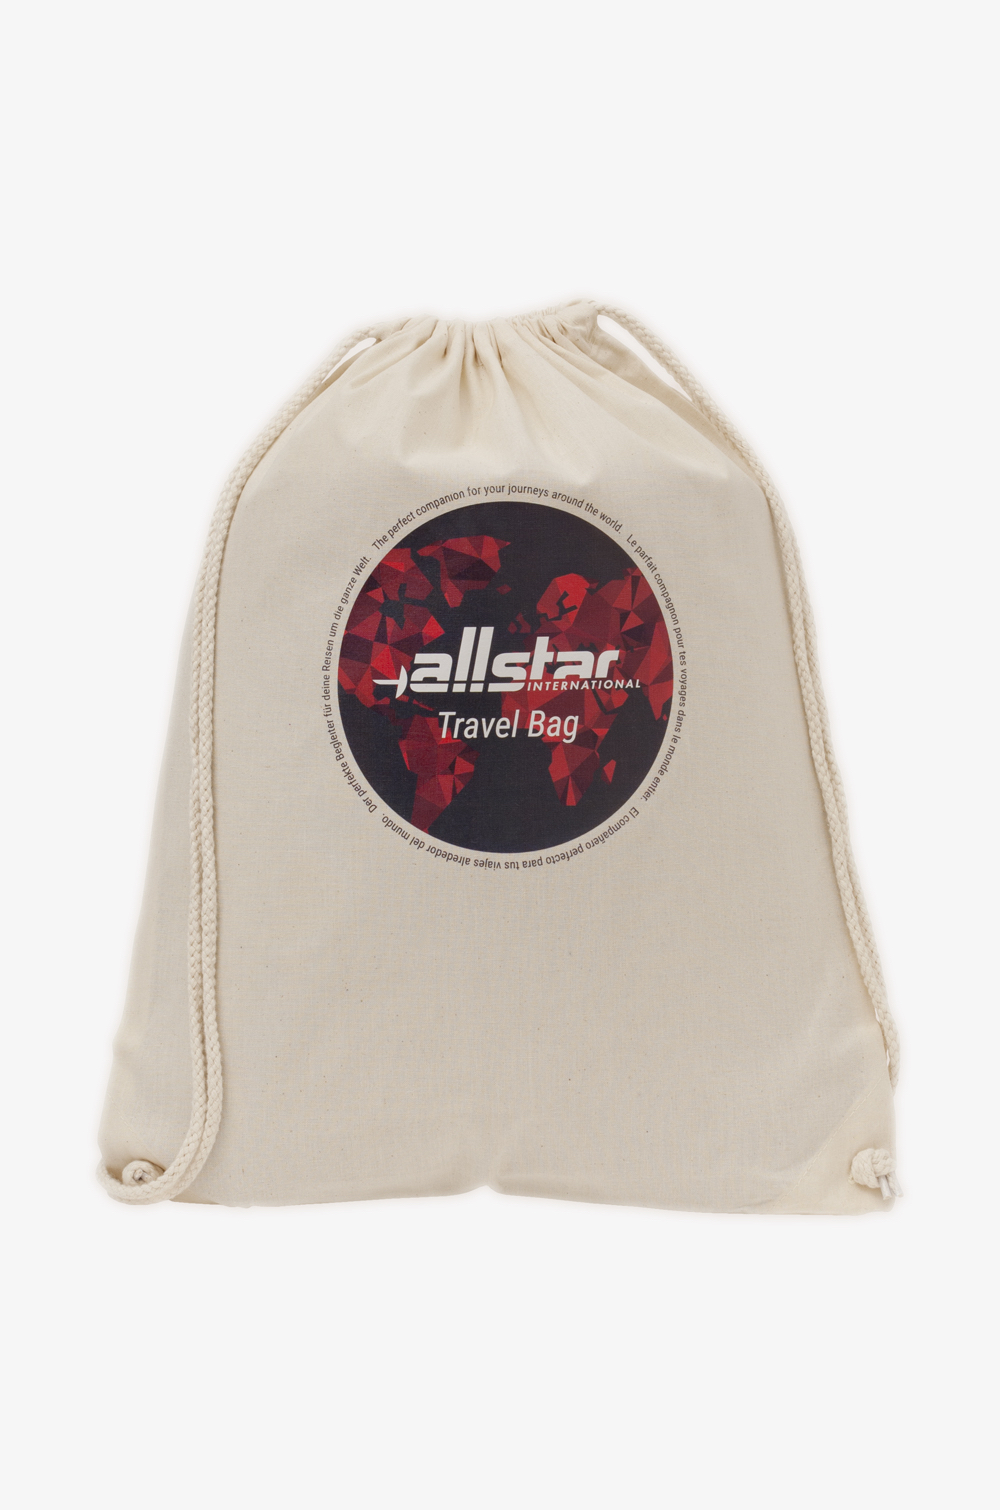 Travel Bag Cotton Drawstring Bag